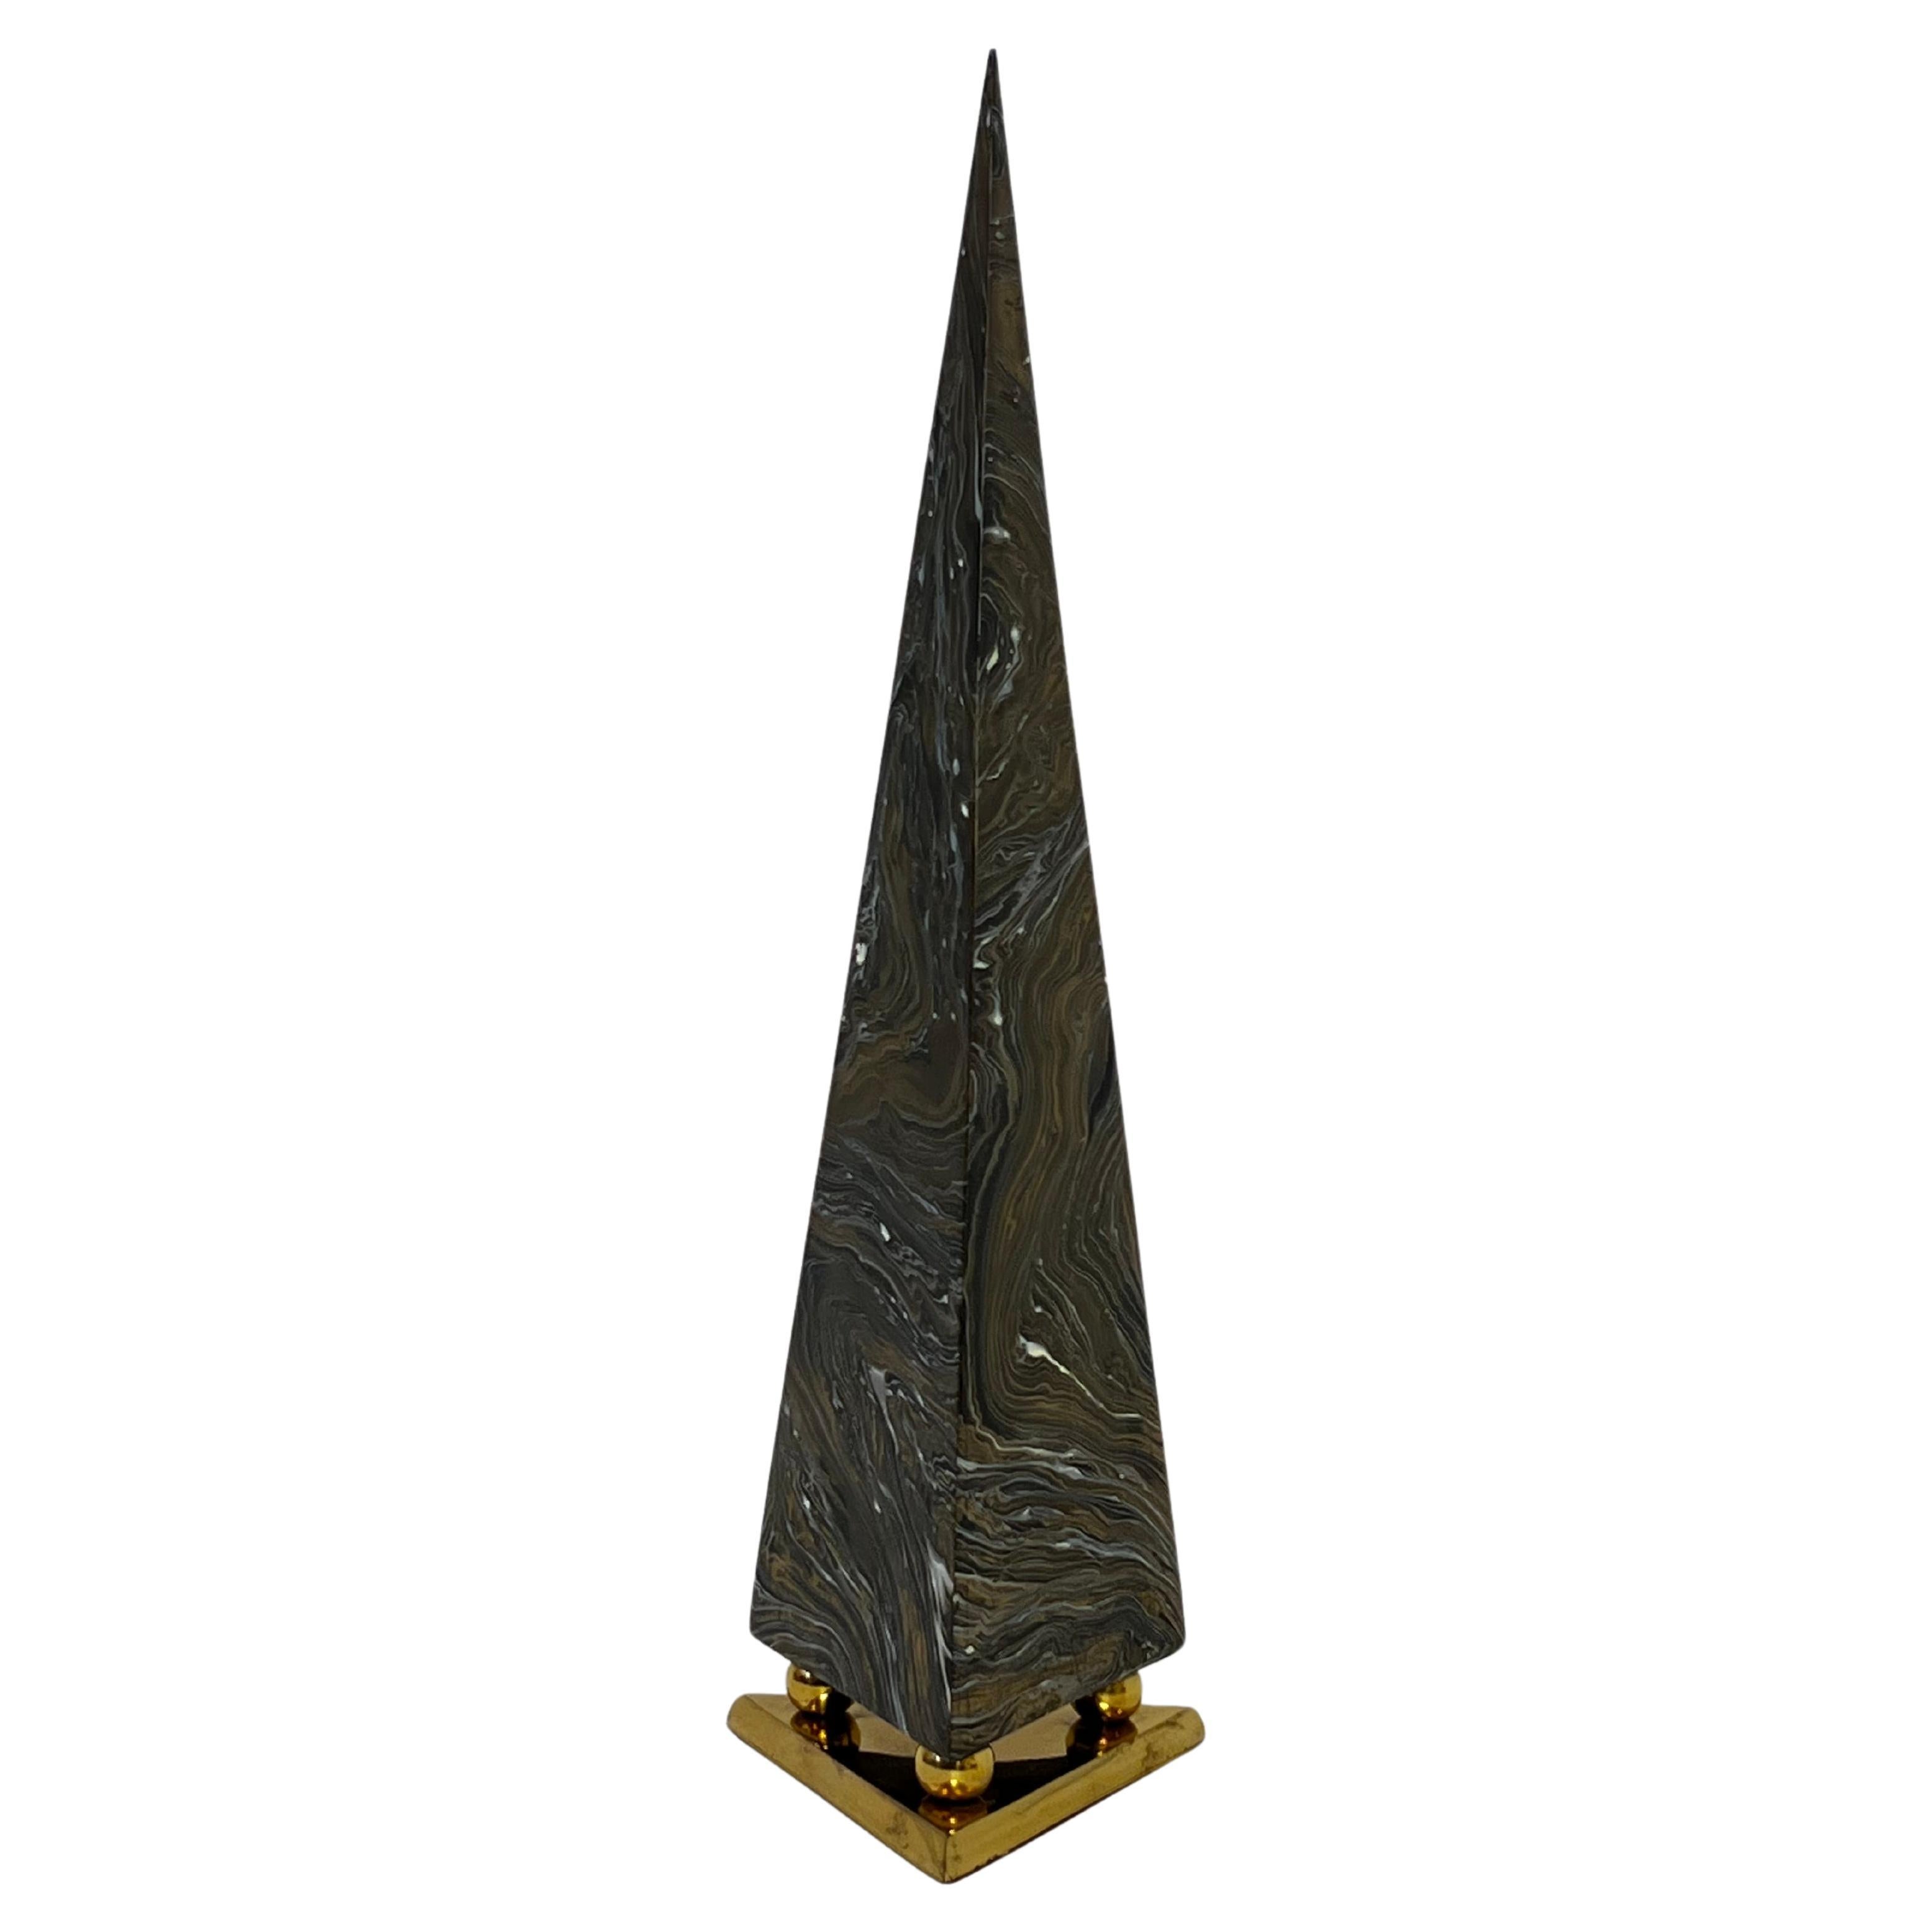 Pyramiden-Obelisk aus marmoriertem Messing, 1970er Jahre  Maitland Smith zugeschrieben. 

In originalem Vintage-Zustand zeigt leichte altersbedingte Gebrauchsspuren (siehe Detailfotos). 